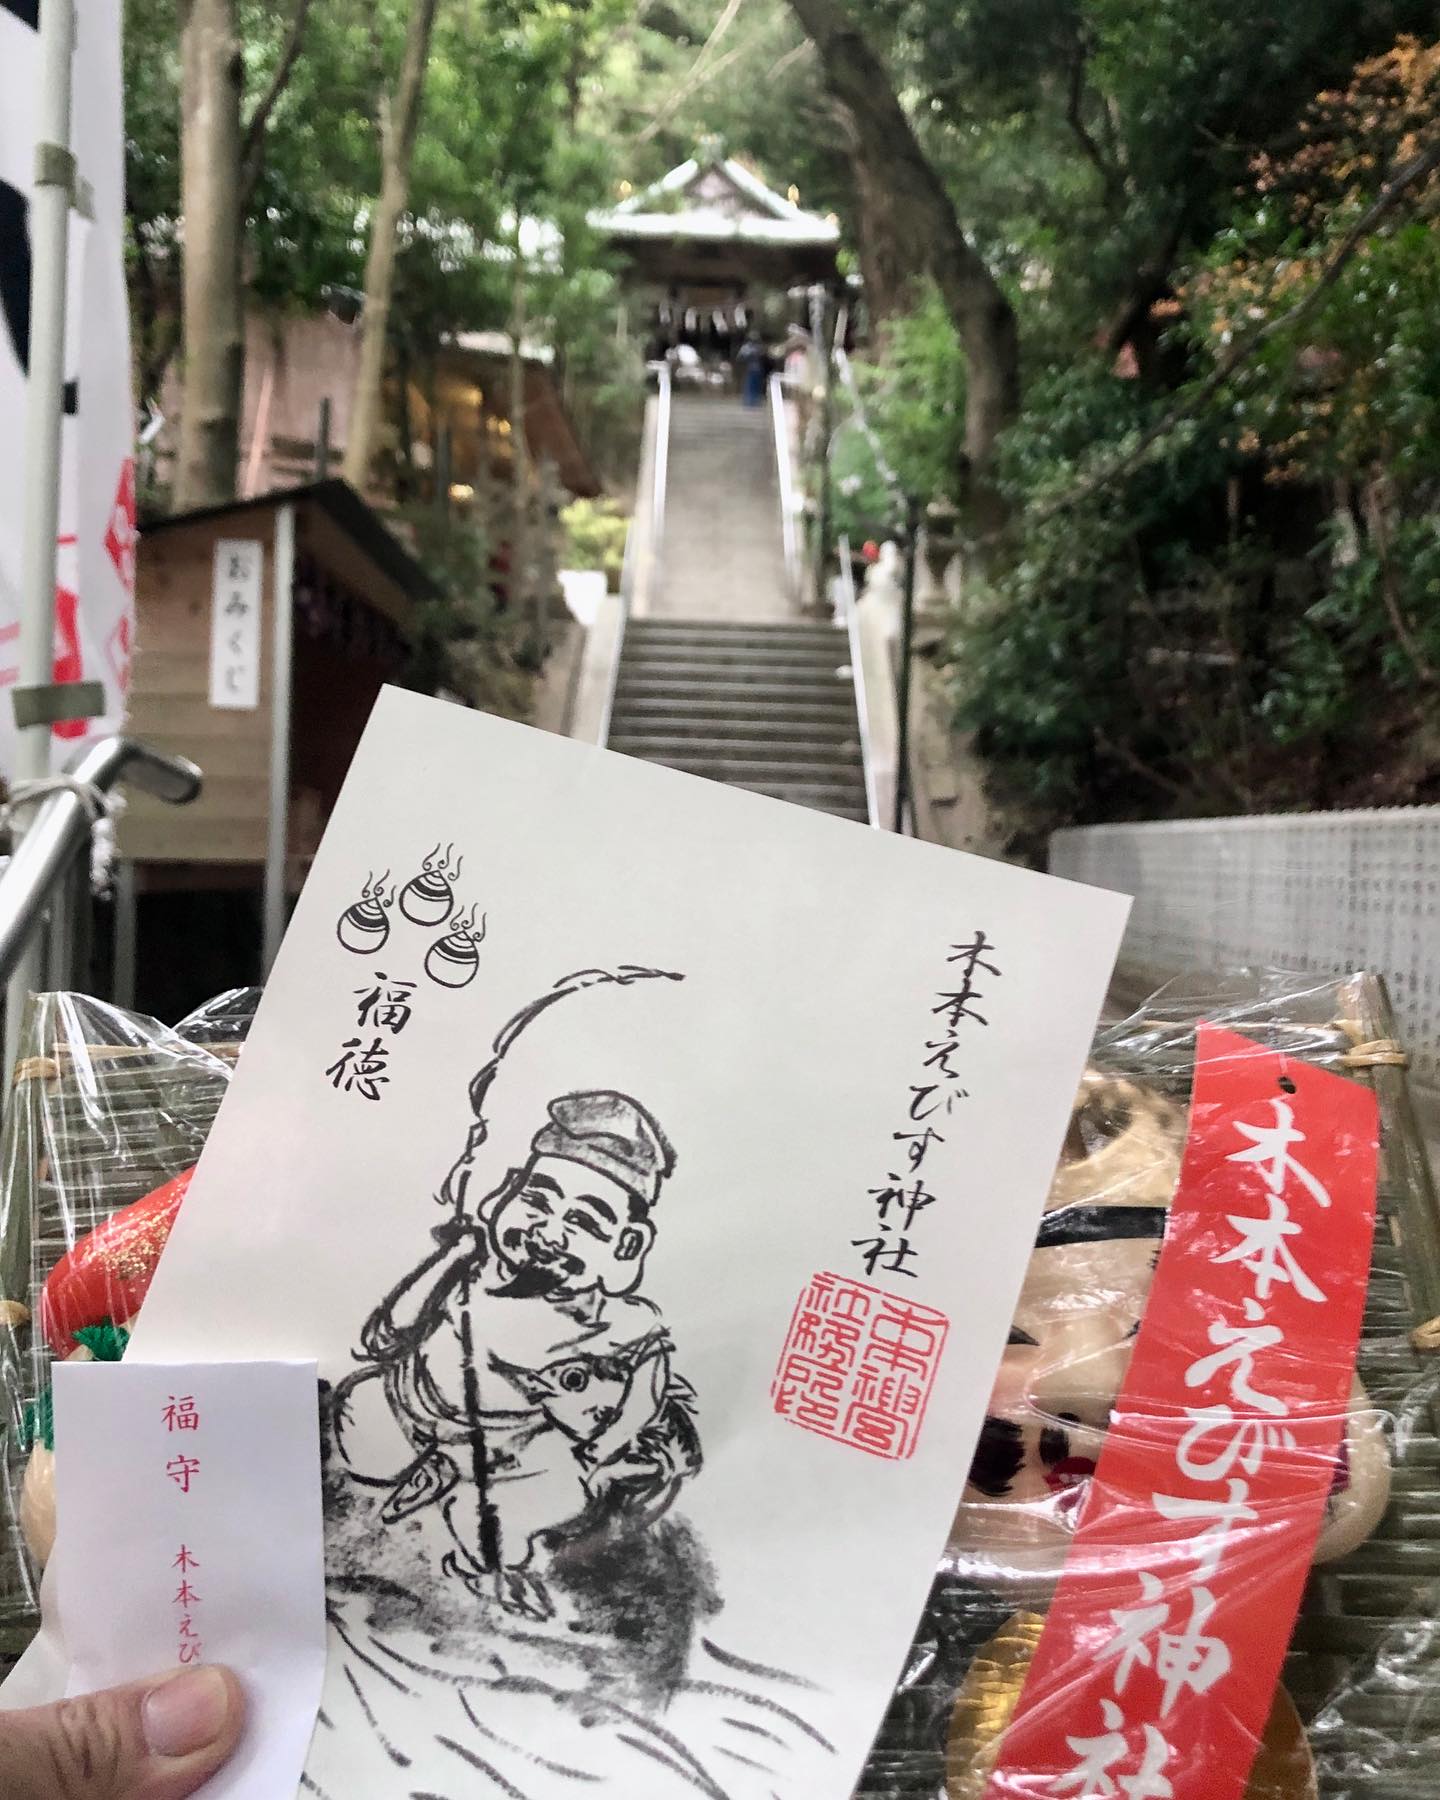 Instagram更新しました。 eg. こんばんは。和歌山の田舎のカメラマンの末藤(ｽｴﾄｳ)です。本日は本恵比寿。朝イチでお願いに行って来ました。去年までは「ここのご利益で良くなった」と仲間内で評判、和歌山で一番古い恵比寿神社と言われている松江の 春日神社 さんへ行っていましたが。今年は心機一転木本八幡宮さんへ。もちろん、先ずは「今までありがとうございました。」と春日神社さんにお札と宝船をお返しして、それから木本八幡宮さんにお願いに行って来ました。どちらの神社さんも北の（川向こうの）三社参りに入っている、歴史のある神社さんなので間違いがあったら僕の行いでしょう！さて帰りに地元の 大年神社 さんでお守りを頂いに社務所に行くと神主さんがお電話中でして、「ちょっと待ってよお客さんが来たからかけ直す」と対応してくれました。でも何か心に違和感が…「お客さん」と言われて「なんだかなぁー」と思ってしまいました。今や病院も学校も患者や生徒をお客さんと思うところも多いそうですが、売り物の価値が下がってしまっている気がします。モンスター患者やモンスターペアレント＆生徒、それを見守るモンスター野次馬がそうさせている気がします。僕はそういう所は昔ながらで居たいモノです。さて、北の三社参りの最後の１社は 大年神社さん。と言うわけで三社参りしてきました。ご利益ありますよーに！#和歌山市 #三社参り #北の三社参り #川向こう #和歌山 #和歌山遺産 #instameet_wakayama #visit_wakayama #instawakayama #nagomi_wakayama #なんて素敵な和歌山なんでしょう #とにかく何かを始めよう #来た時よりも美しく #相手の気持ちを考えて#和歌山のカメラマン #和歌山出張カメラマン #はれのひ工房 #写真屋はれのひ工房 #ハレノヒ工房 #晴れの日工房 #ハレの日工房 #和歌山出張撮影 #和歌山フォトグラファー #wakayama_photo #フォトバンク和歌山 #写真保険 #青空保証 #写真の撮り方教えます – from Instagram